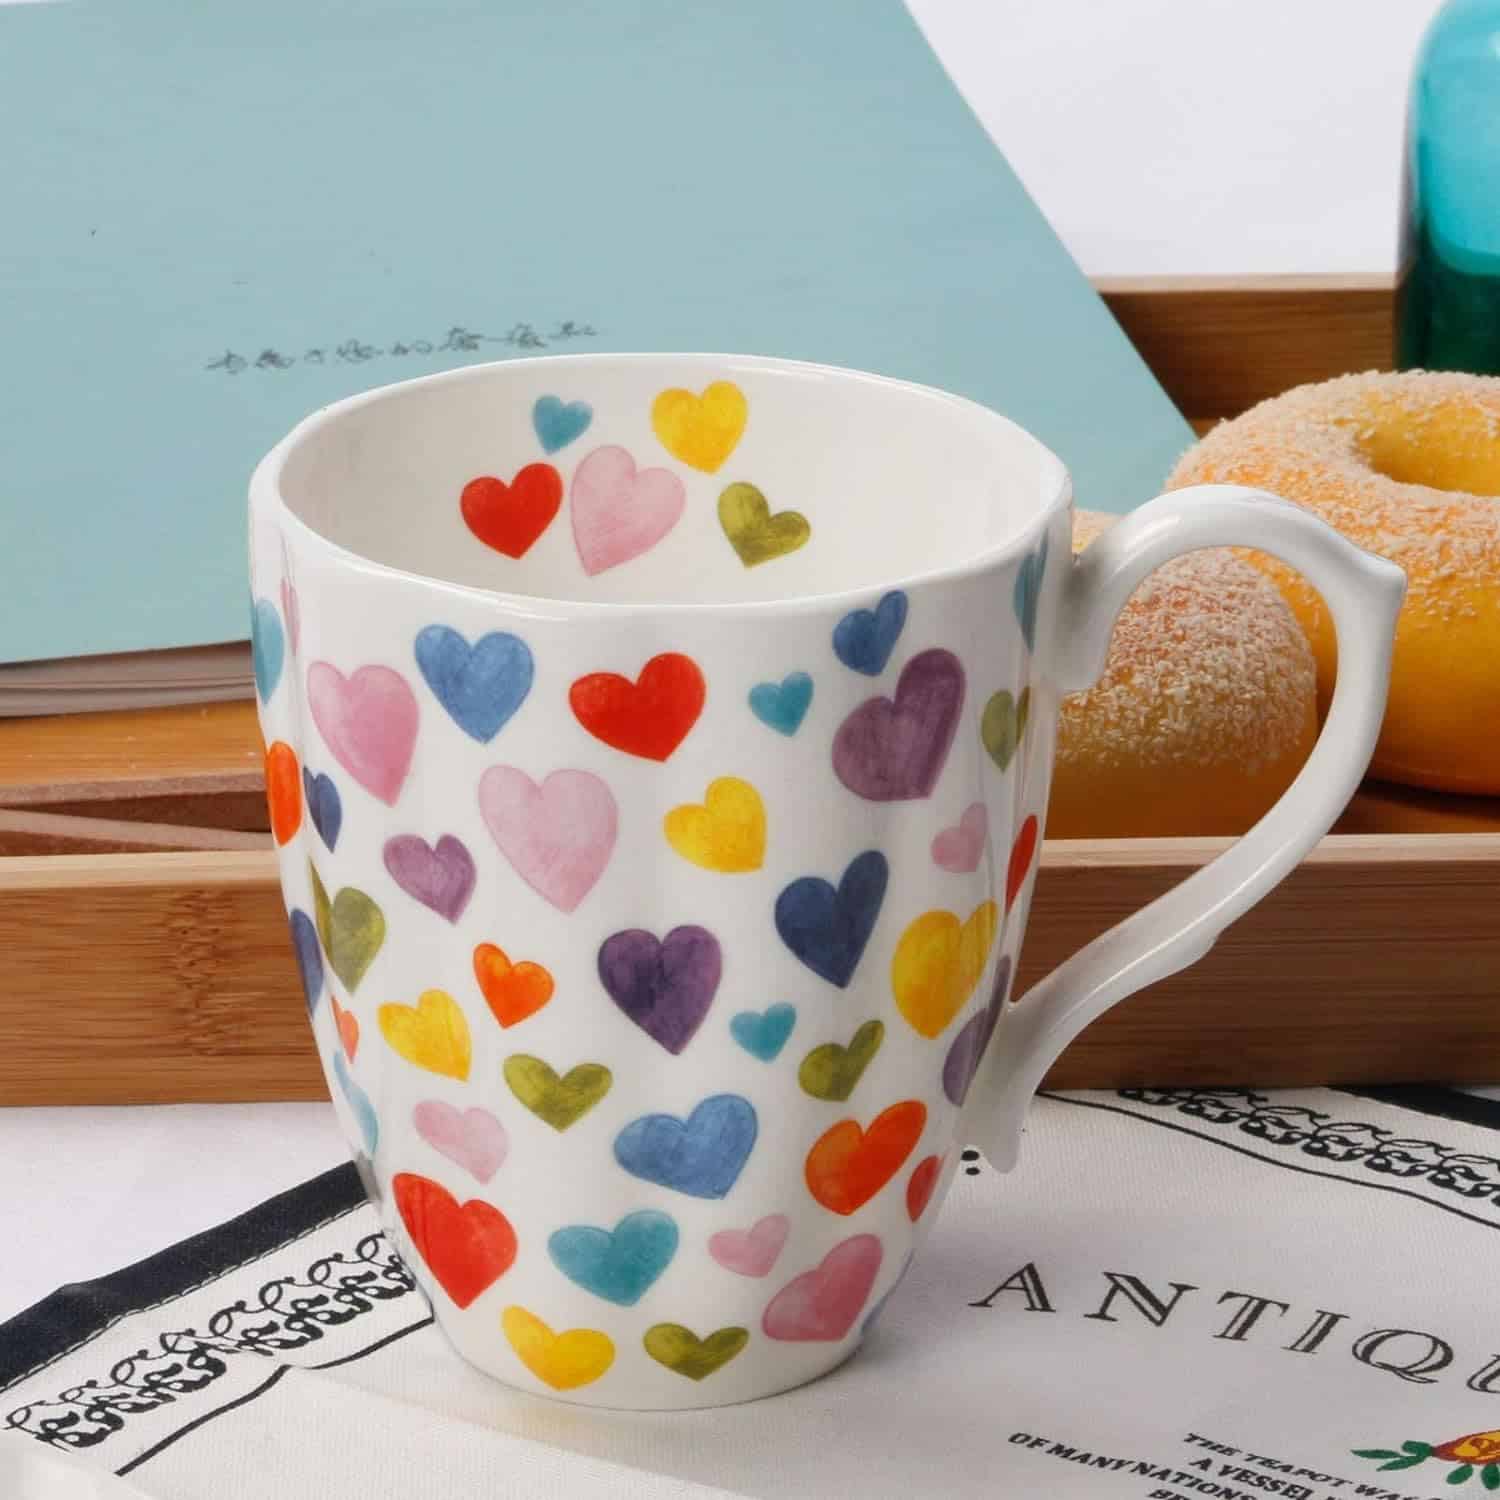 Cute Coffee Mug With Hearts